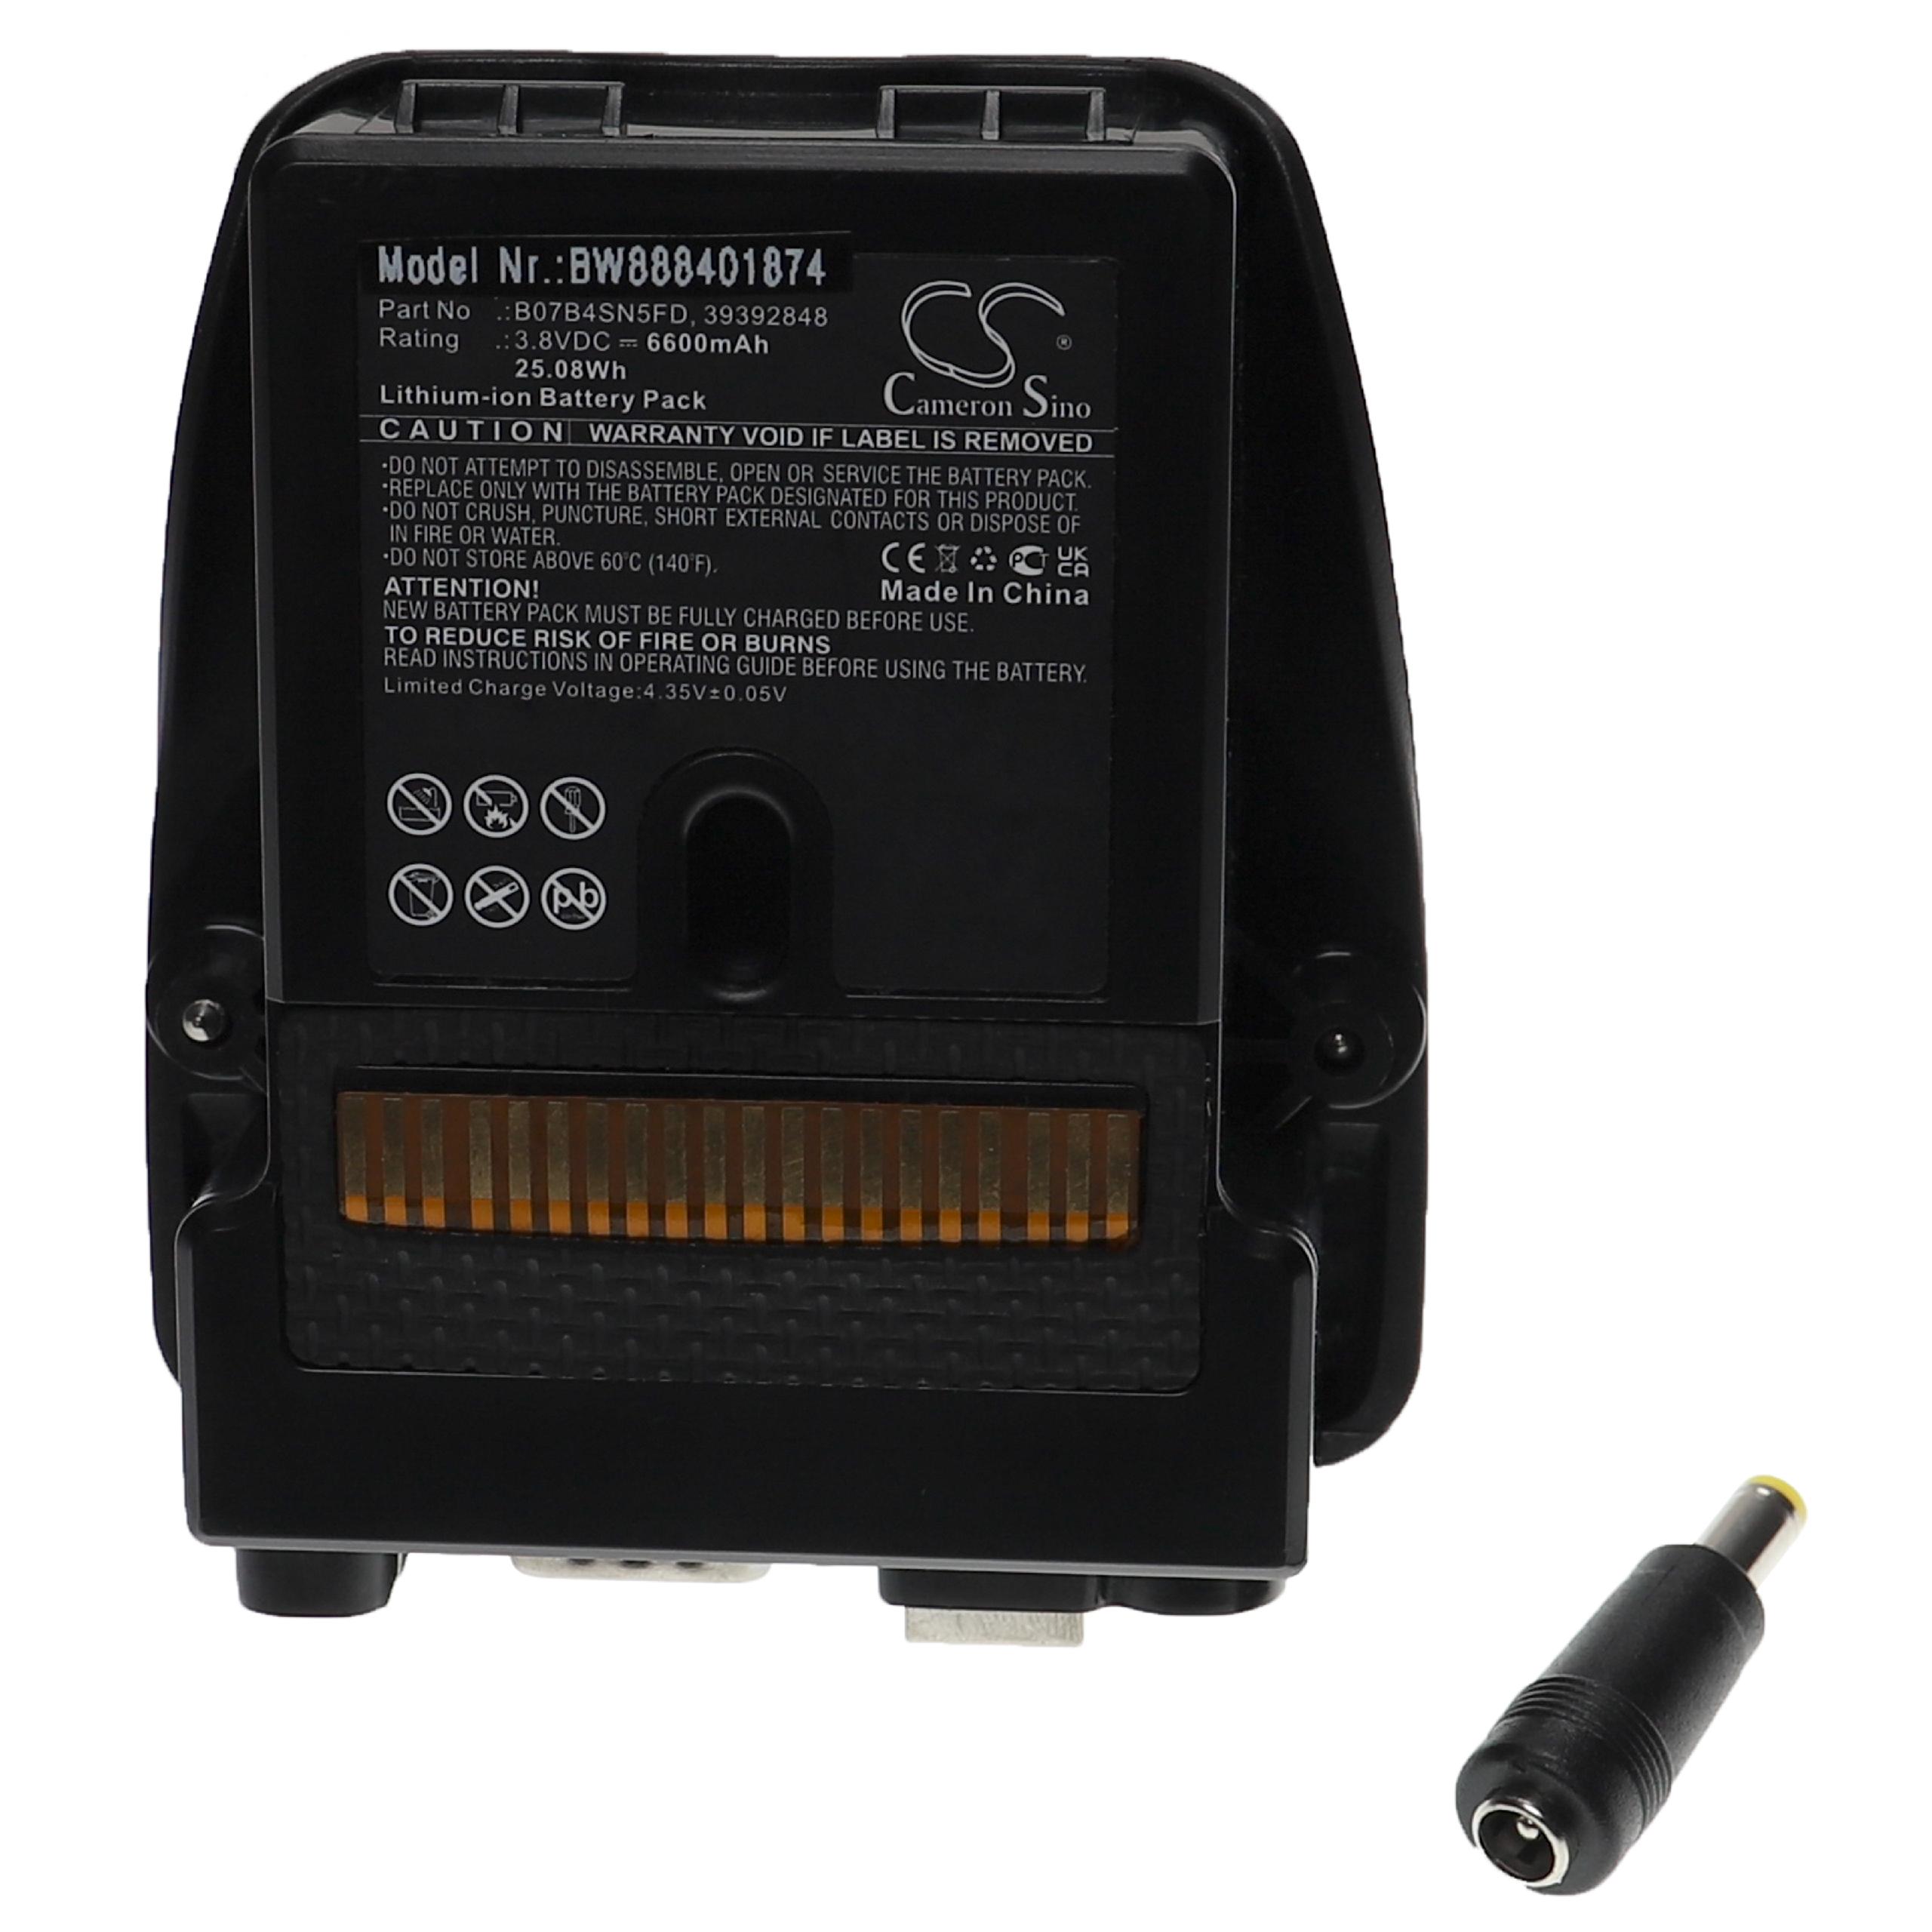 Batterie remplace Trimble B07B4SN5FD, 39392848 pour outil de mesure - 6600mAh 3,8V Li-ion